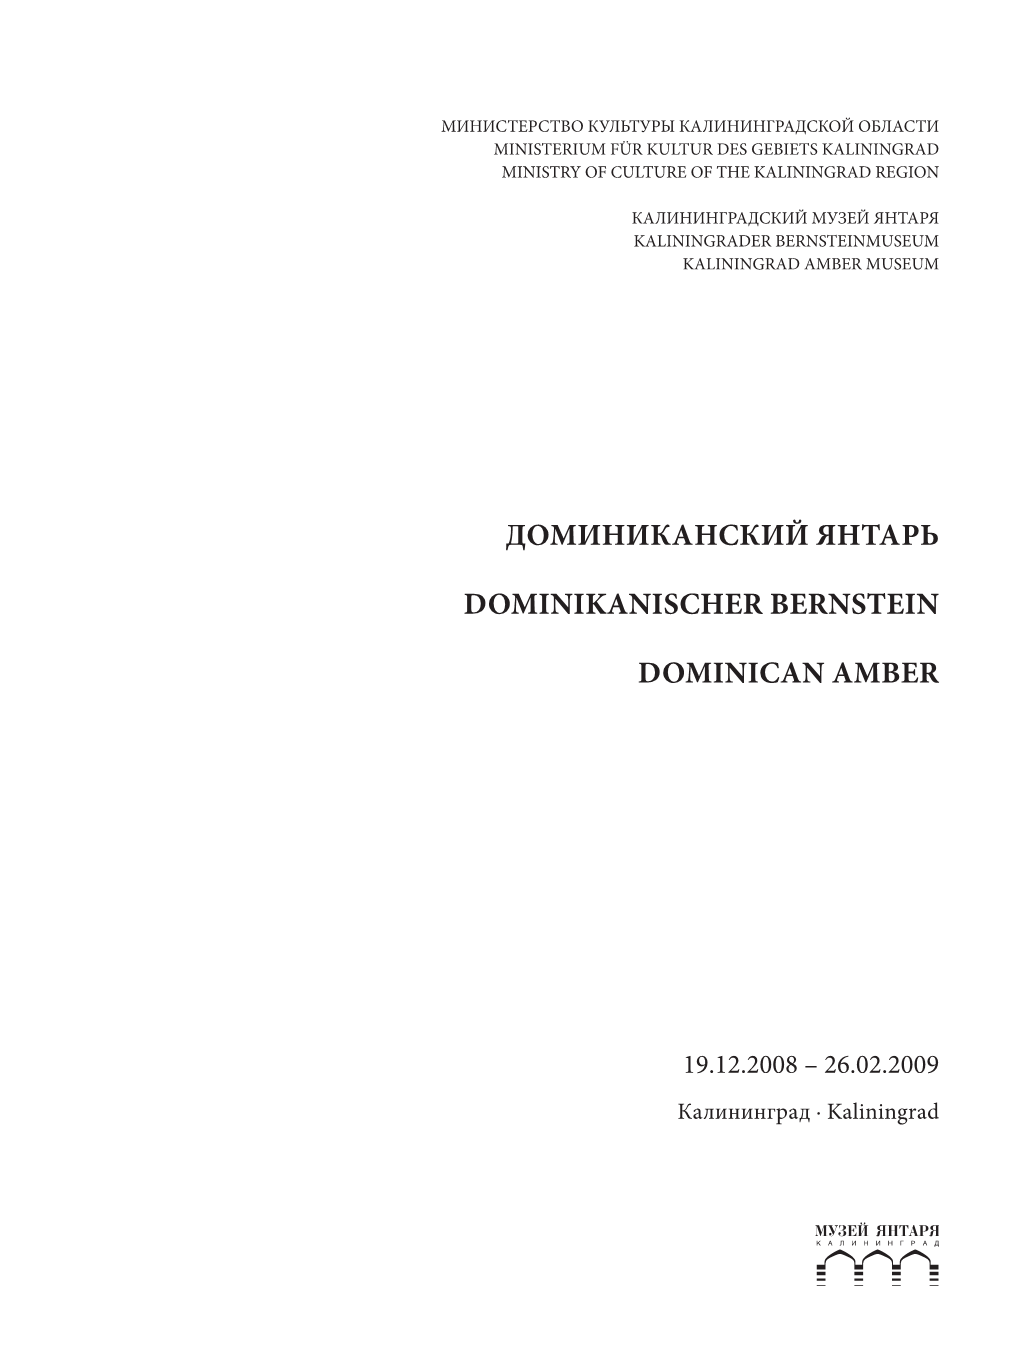 Доминиканский Янтарь Dominikanischer Bernstein Dominican Amber